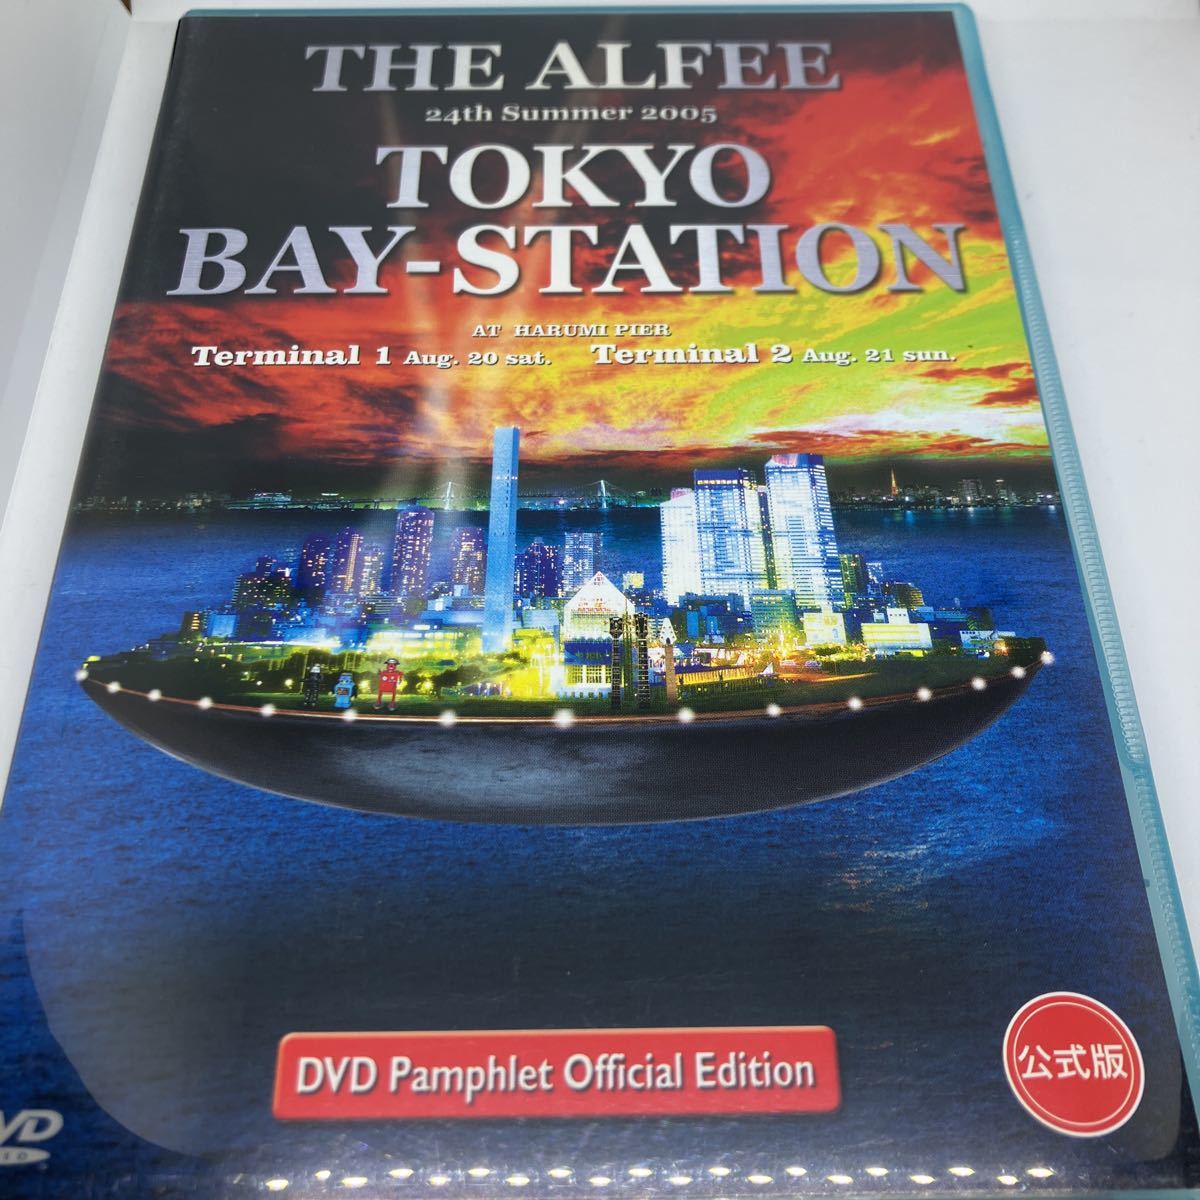 アルフィー DVD THE ALFEE 24th Summer 2005 TOKYO BAY-STATION 公式版